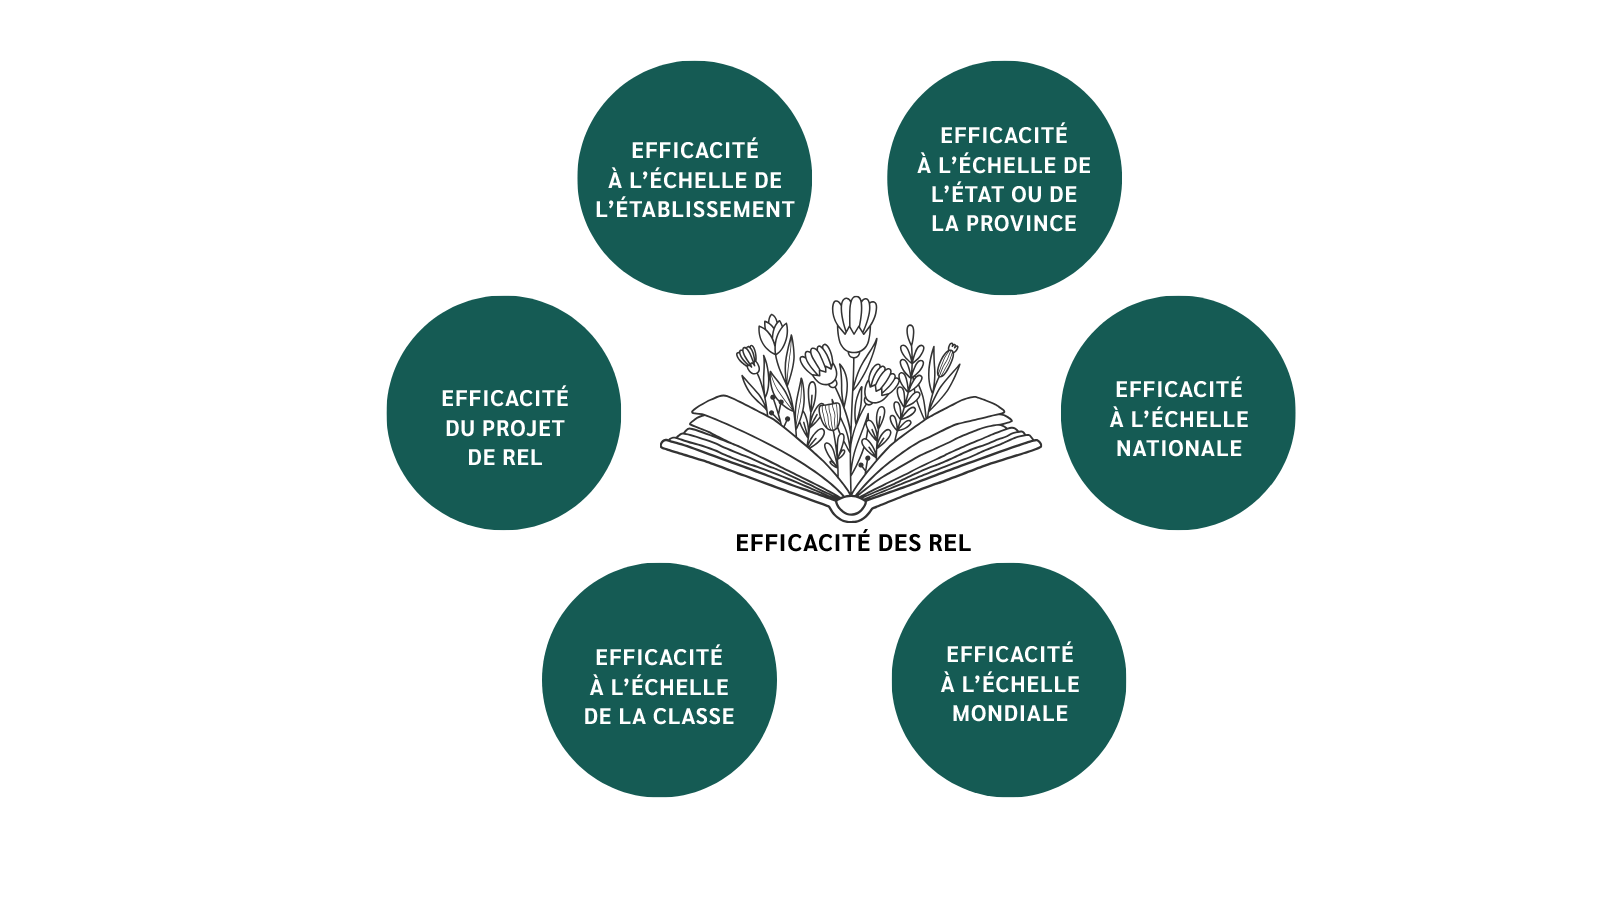 Diagramme présentant six niveaux d’efficacité des REL. Six cercles vert foncé entourent le croquis d’un livre ouvert nommé « EFFICACITÉ DES REL »; des fleurs poussent sur les pages. Les cercles, à partir de celui en bas à gauche, sont nommés, dans le sens horaire : Efficacité à l’échelle de la classe, Efficacité du projet de REL, Efficacité à l’échelle de l’institution, Efficacité à l’échelle de l’État ou de la province, Efficacité à l’échelle nationale, Efficacité à l’échelle mondiale.